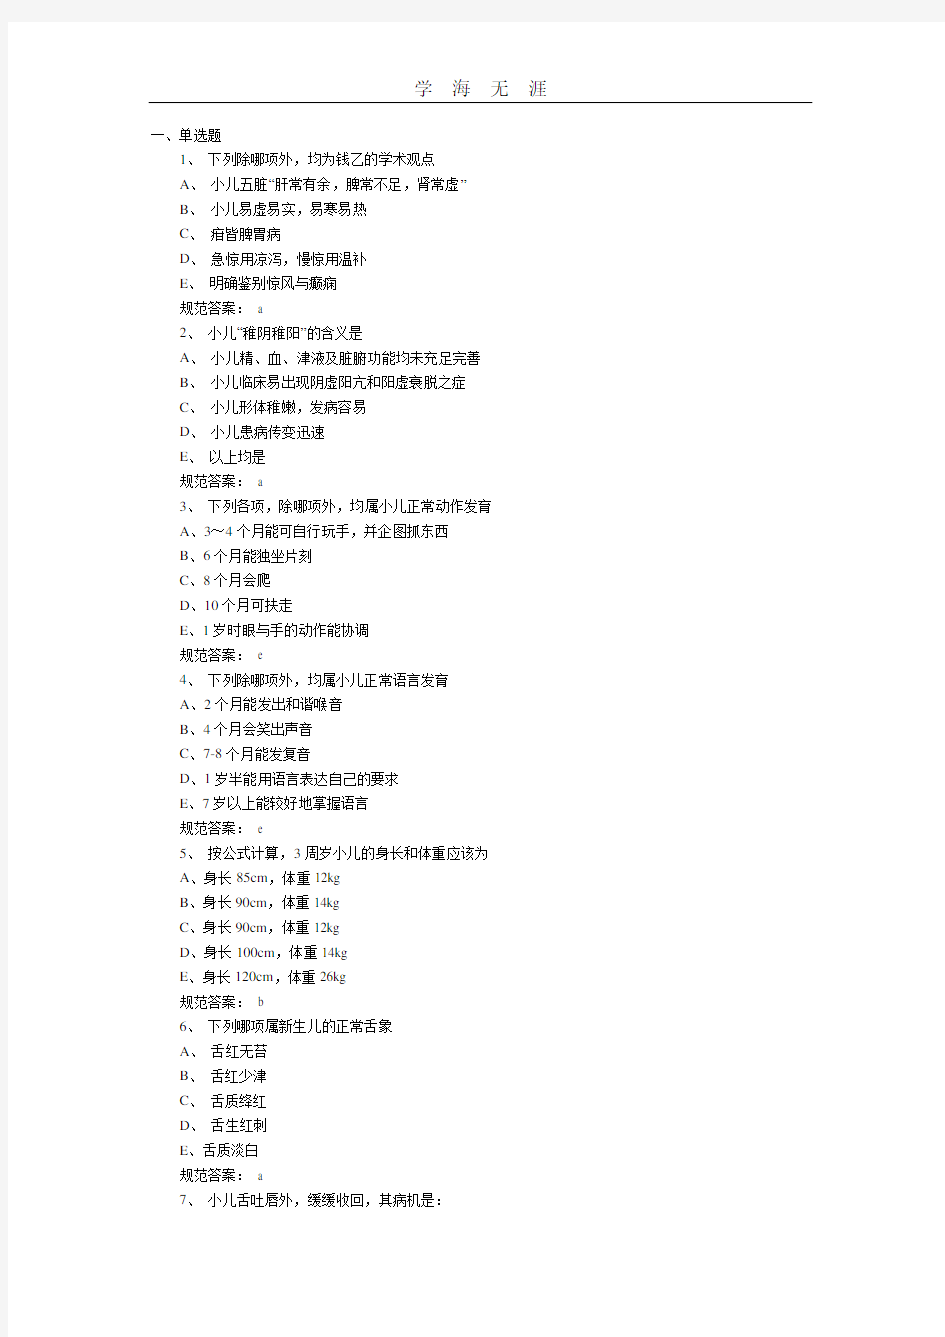 中医执业医师考试模拟试题(一).pdf